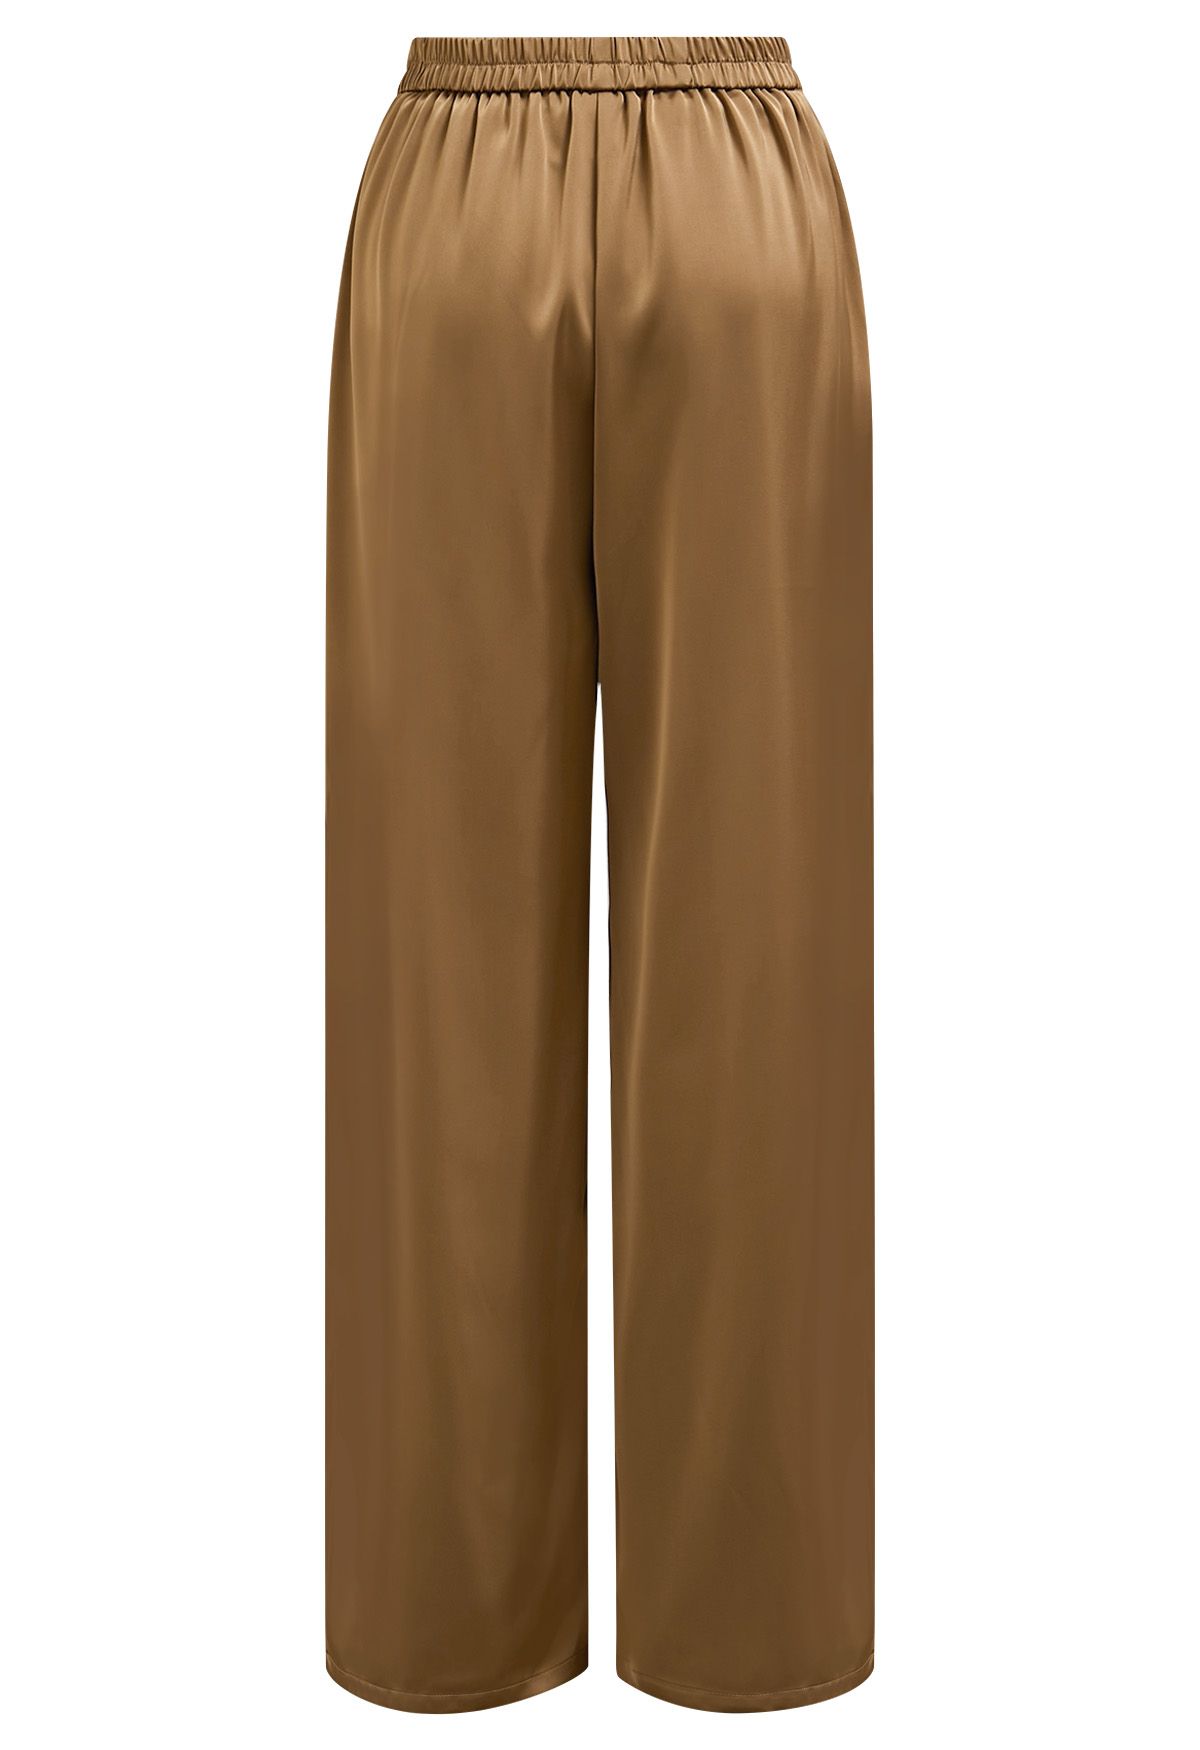 Pantalones sin cordones con acabado satinado en color canela